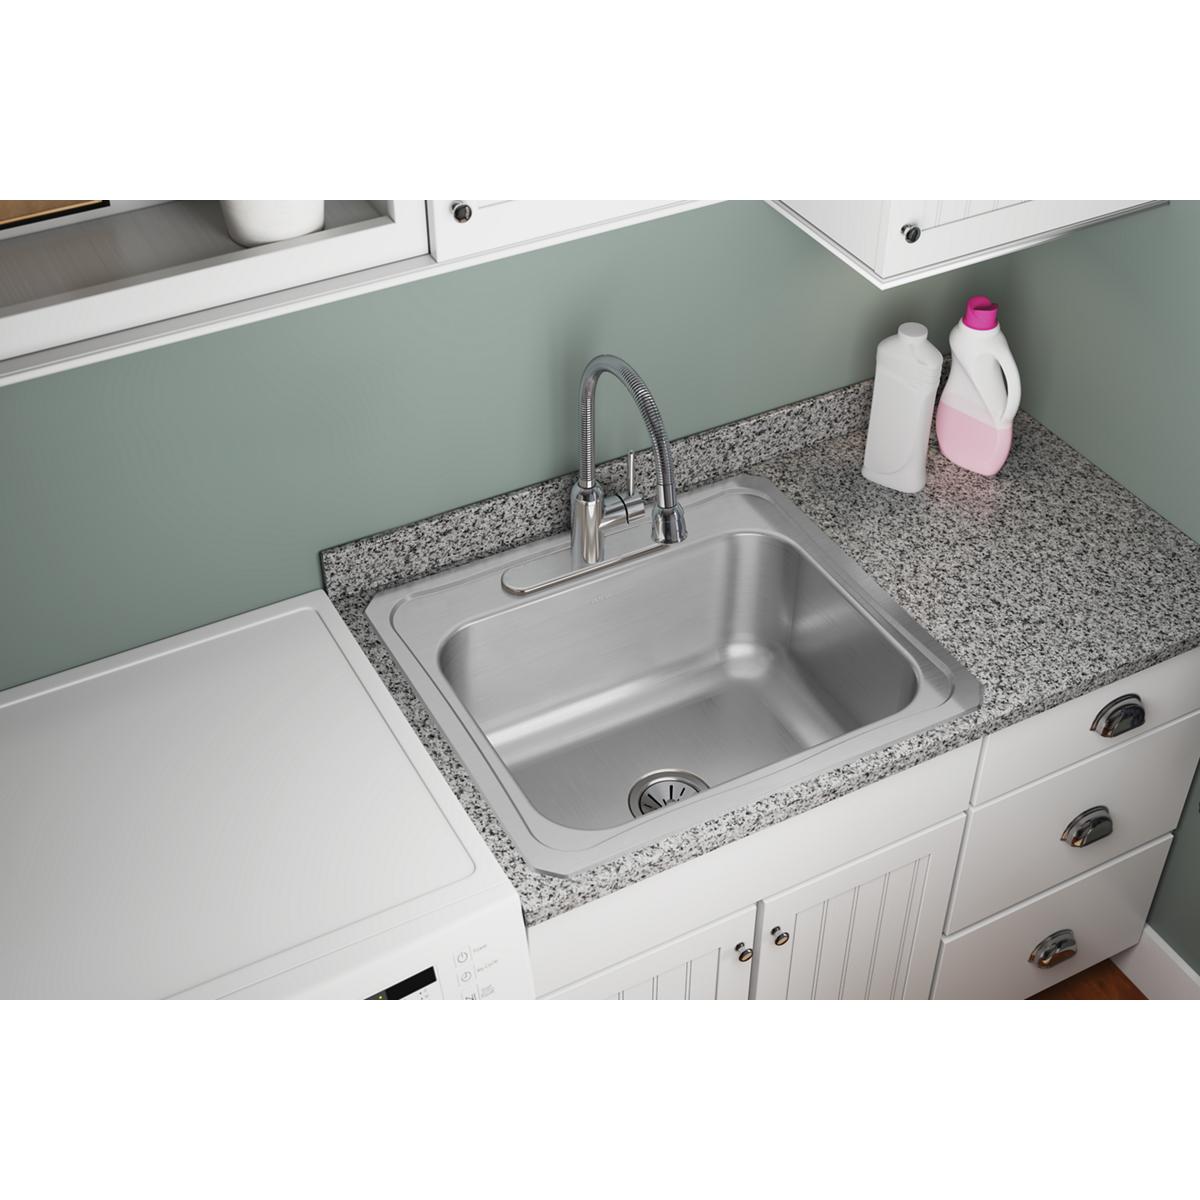 Elkay 25" x 22" x 10-1/4" Stainless Steel Single Bowl Drop-in Laundry Sink